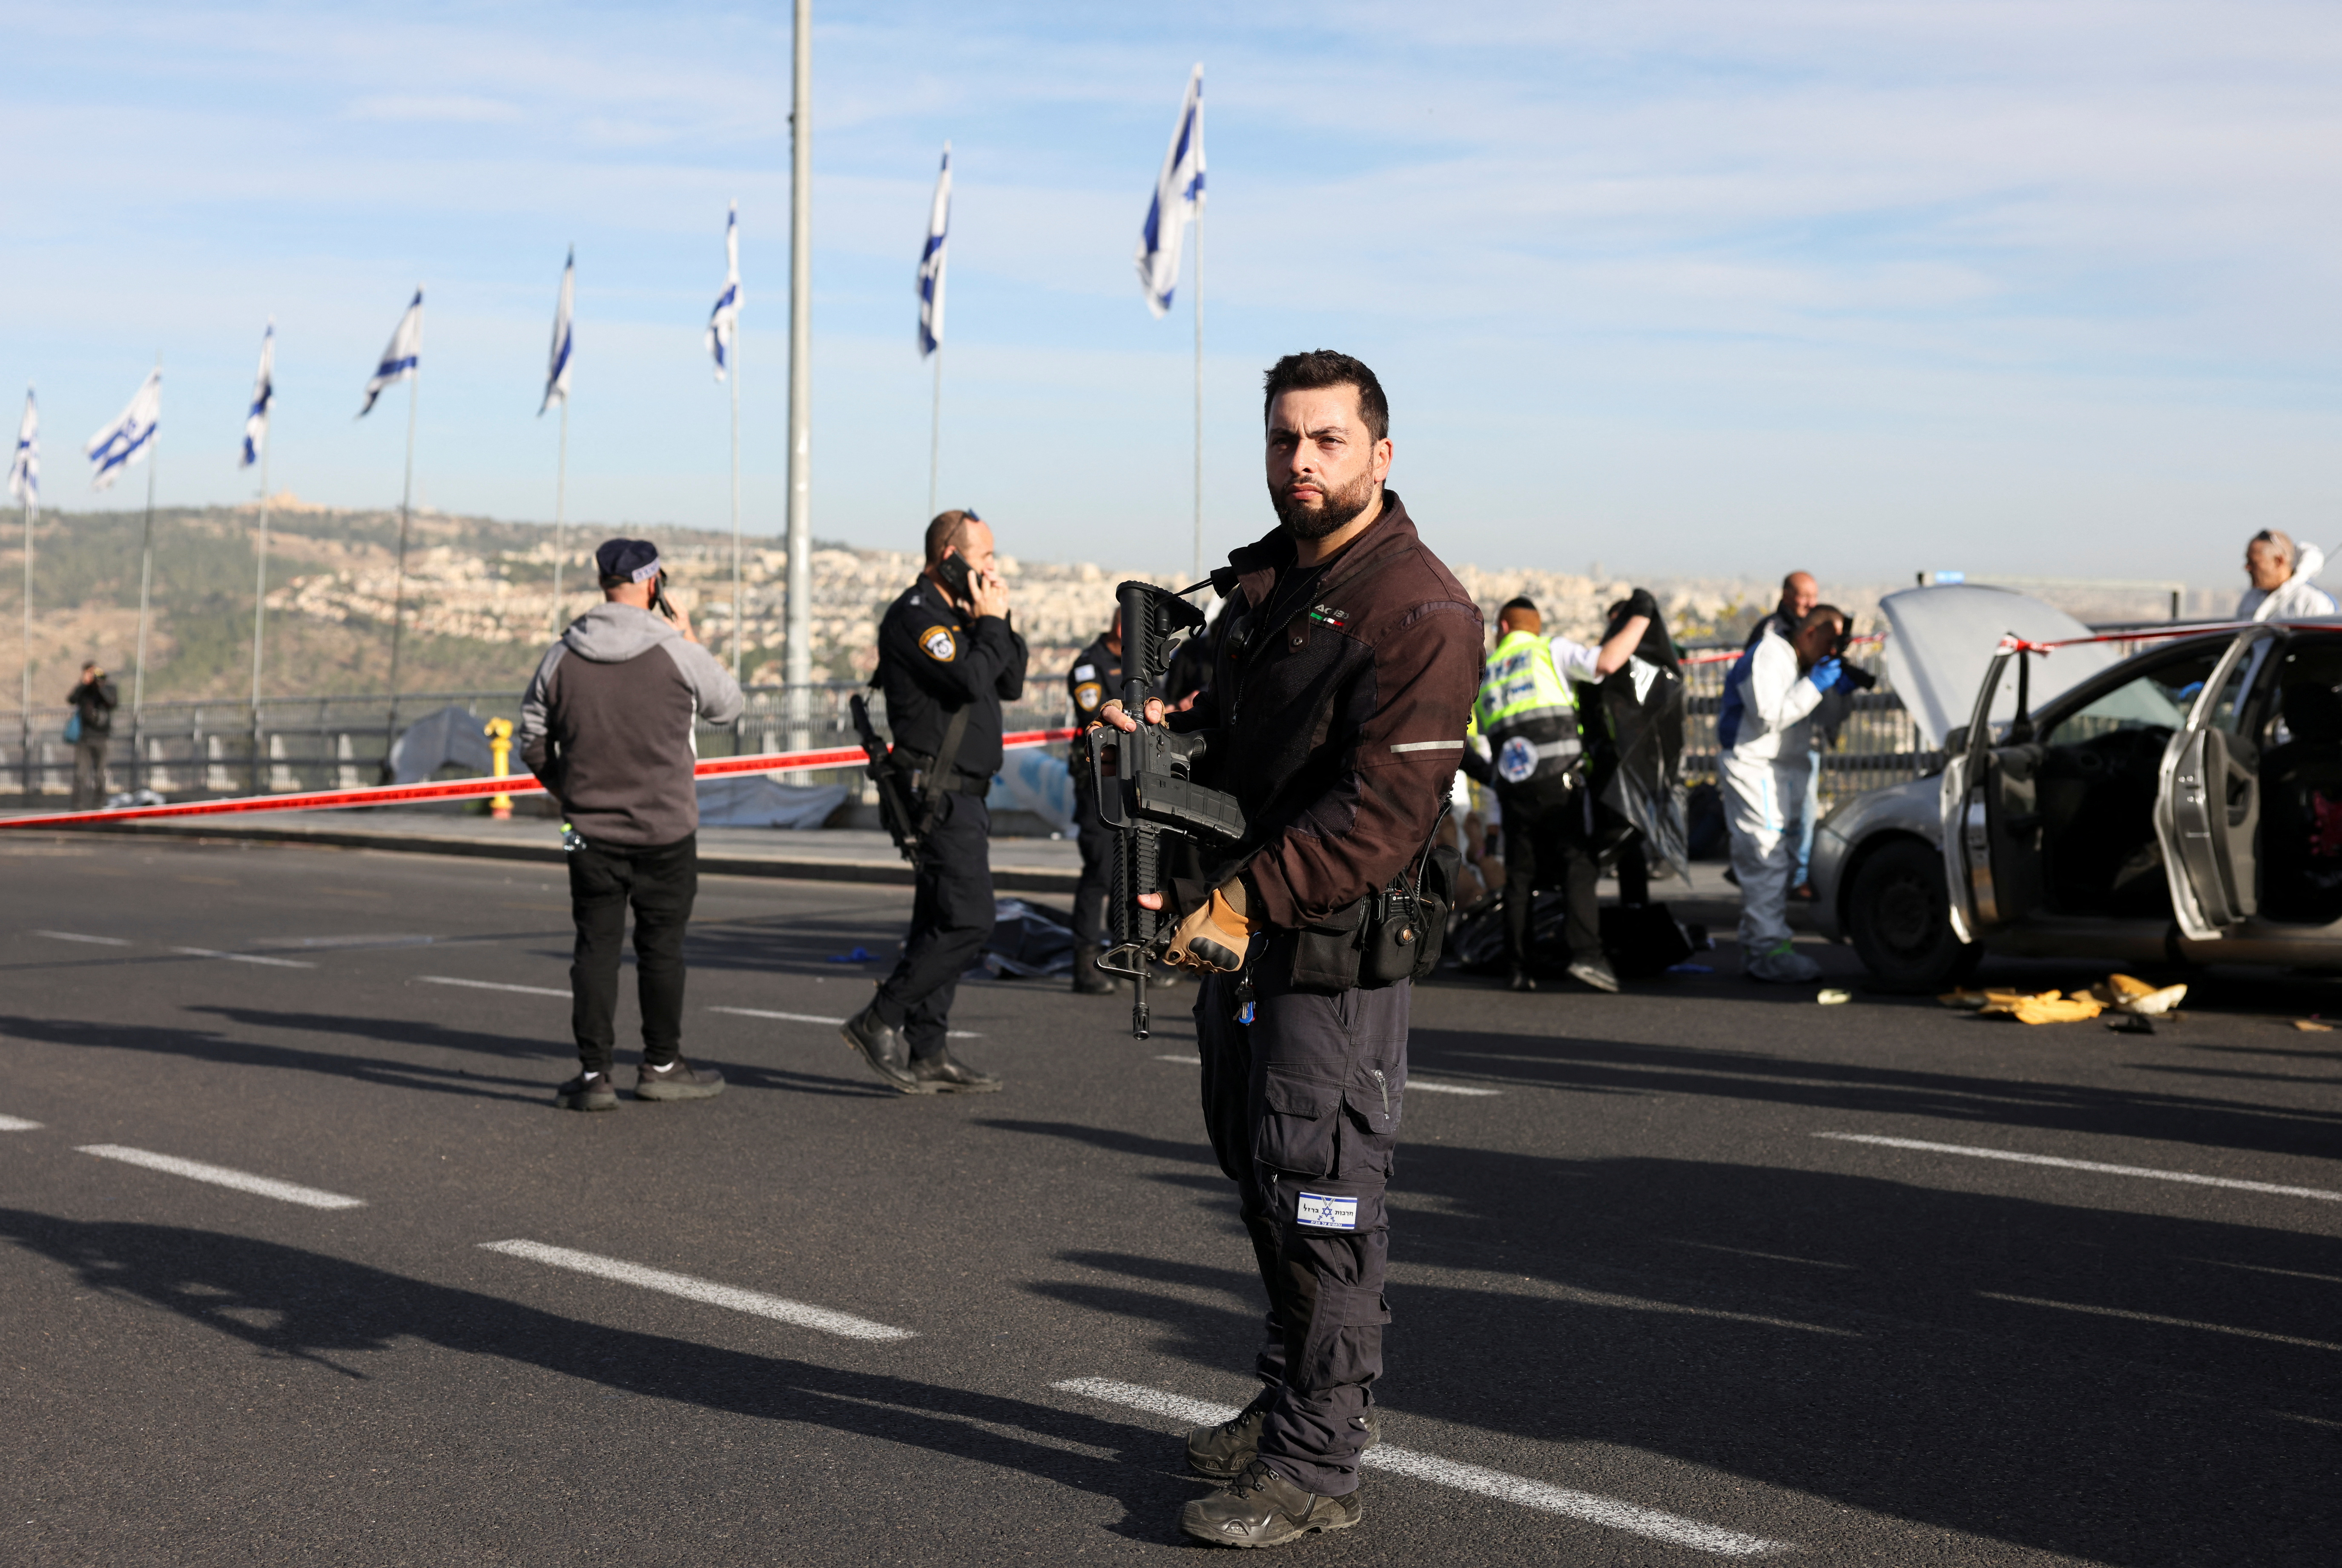 Aftermath of a violent incident in Jerusalem